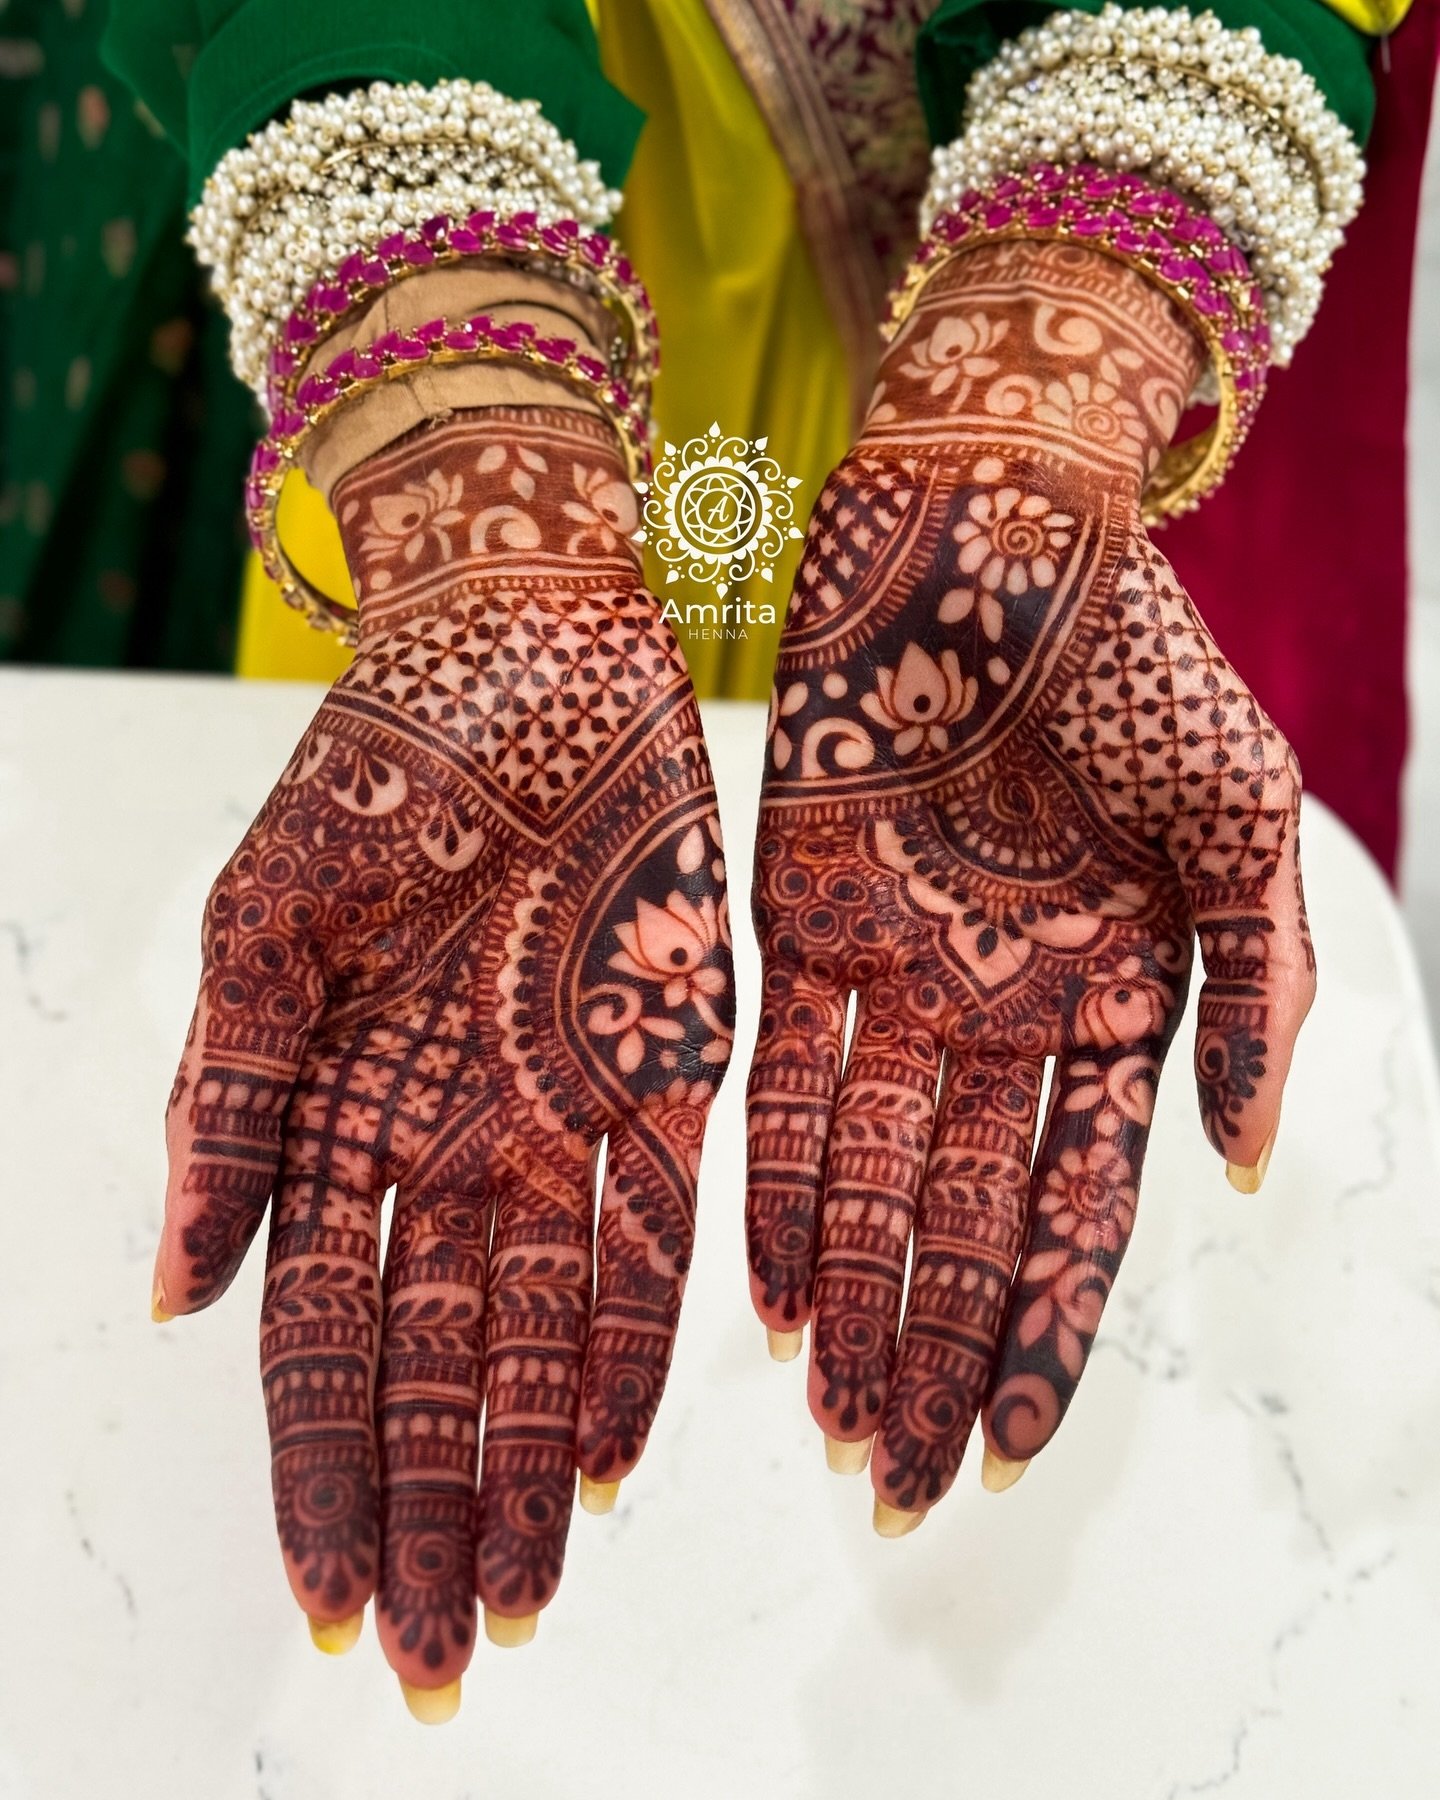 In love with this stain! ❤️

#amritahenna #bridalmehndi #hennadesign #wedmegood #orlandoart #bridalhenna #dulhan #weddinginspo #indianwedding #orlandobride #mehandi #floridawedding #indianmehndi  #weddinginspiration #weddingphotography #bridalfashion